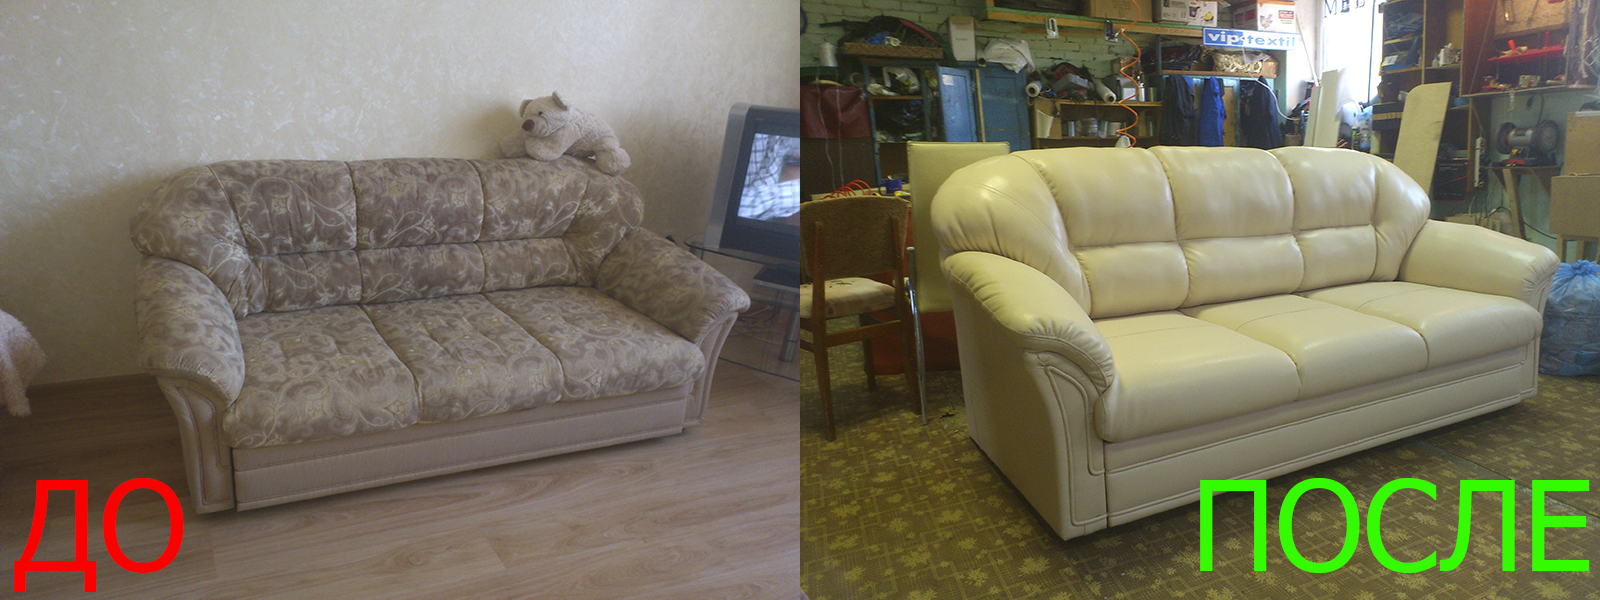 Перетяжка мебели в Казани на дому и с вывозом - разумные цены на услуги